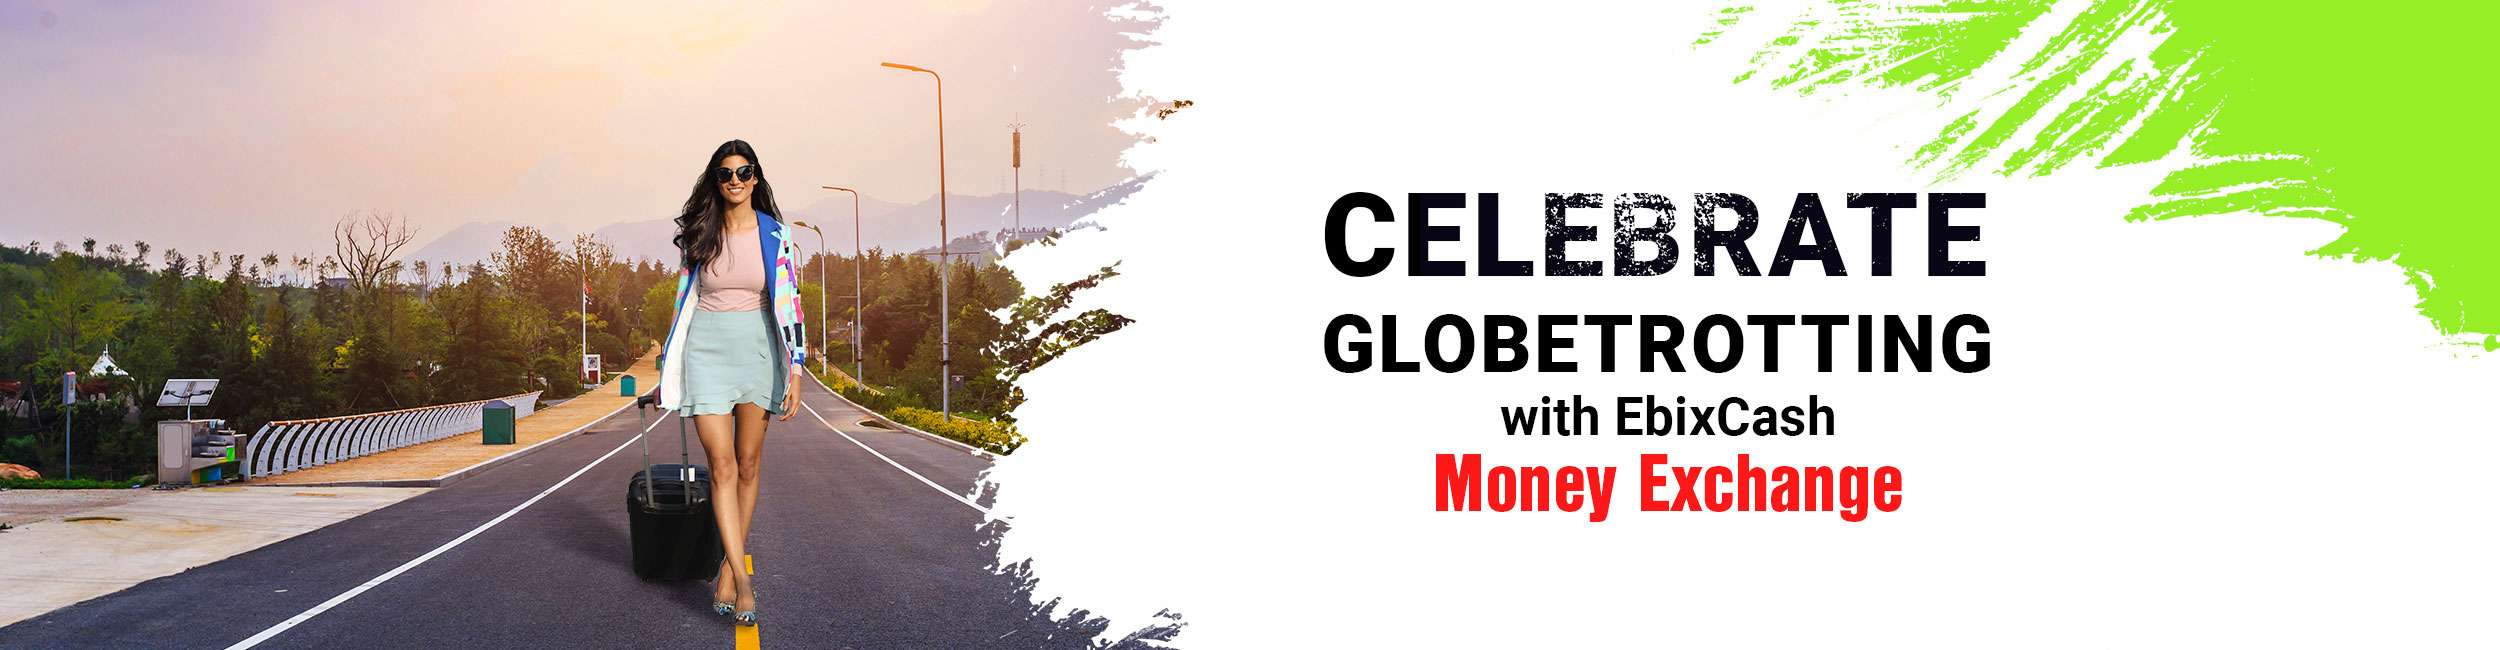 EbixCash Celebrate Globetrotting with EbixCash Money Exchange